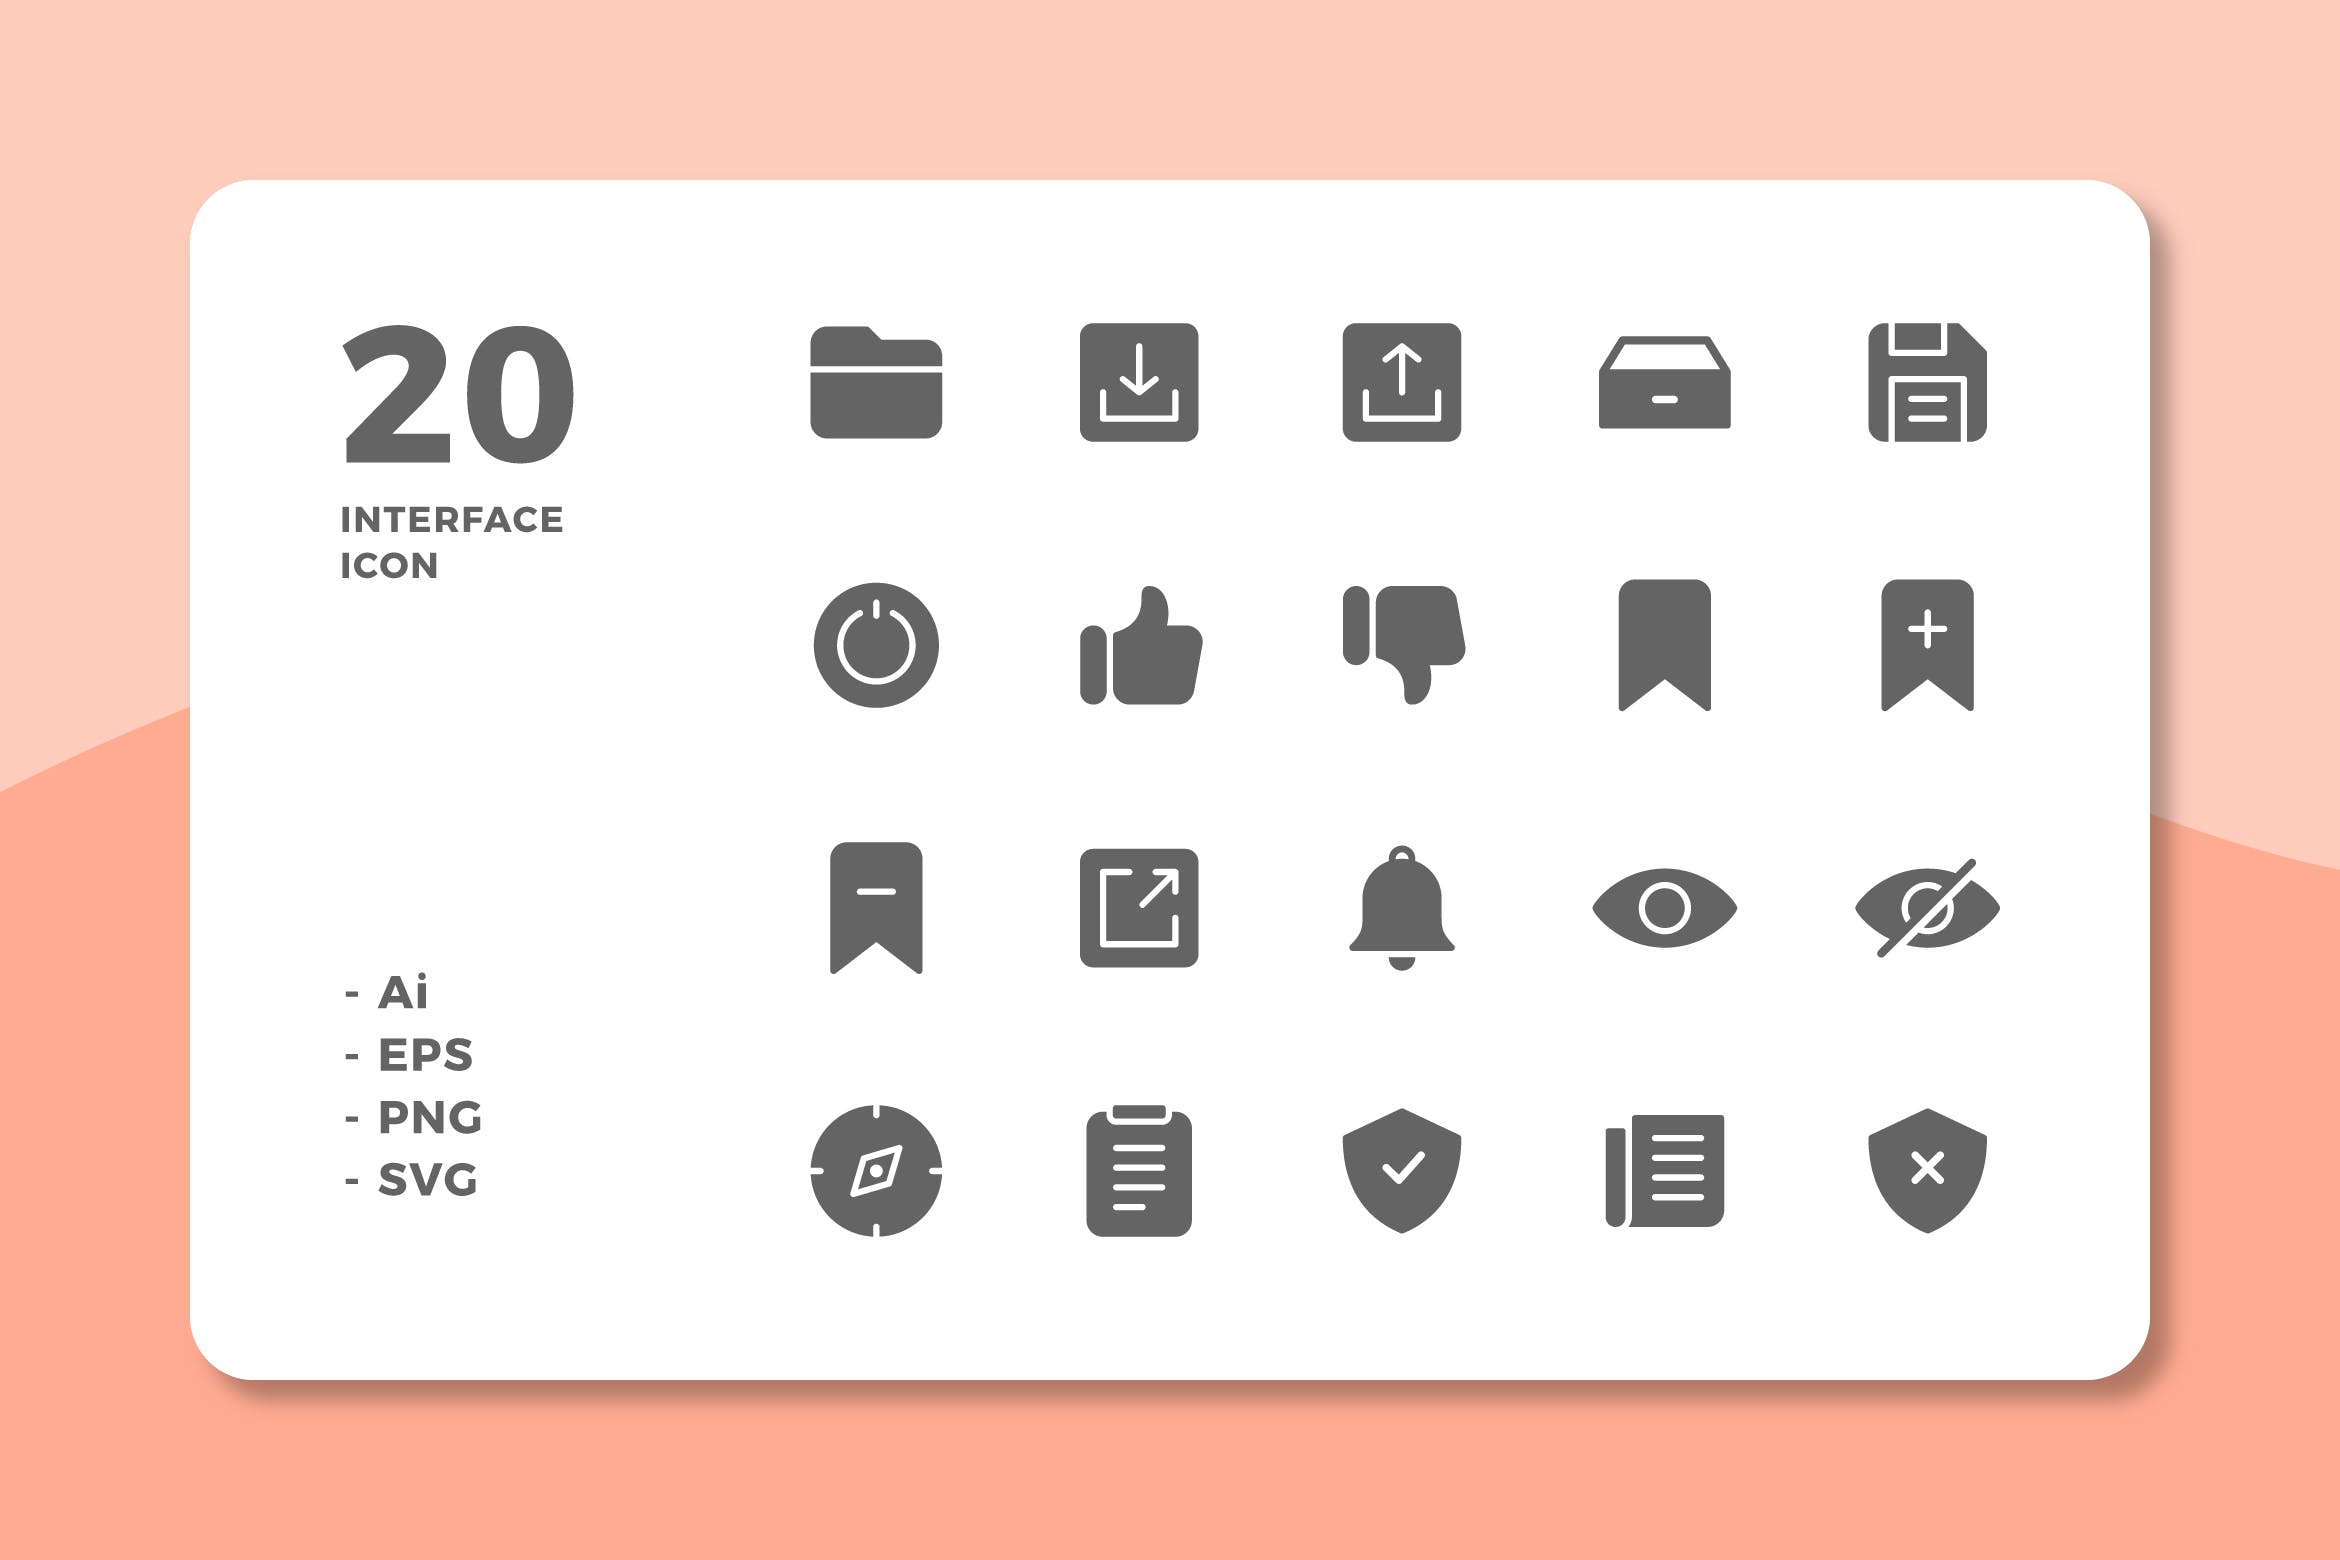 20枚UI界面设计APP操作选项素材天下精选图标v3 20 Interface Icons Vol.3 (Solid)插图